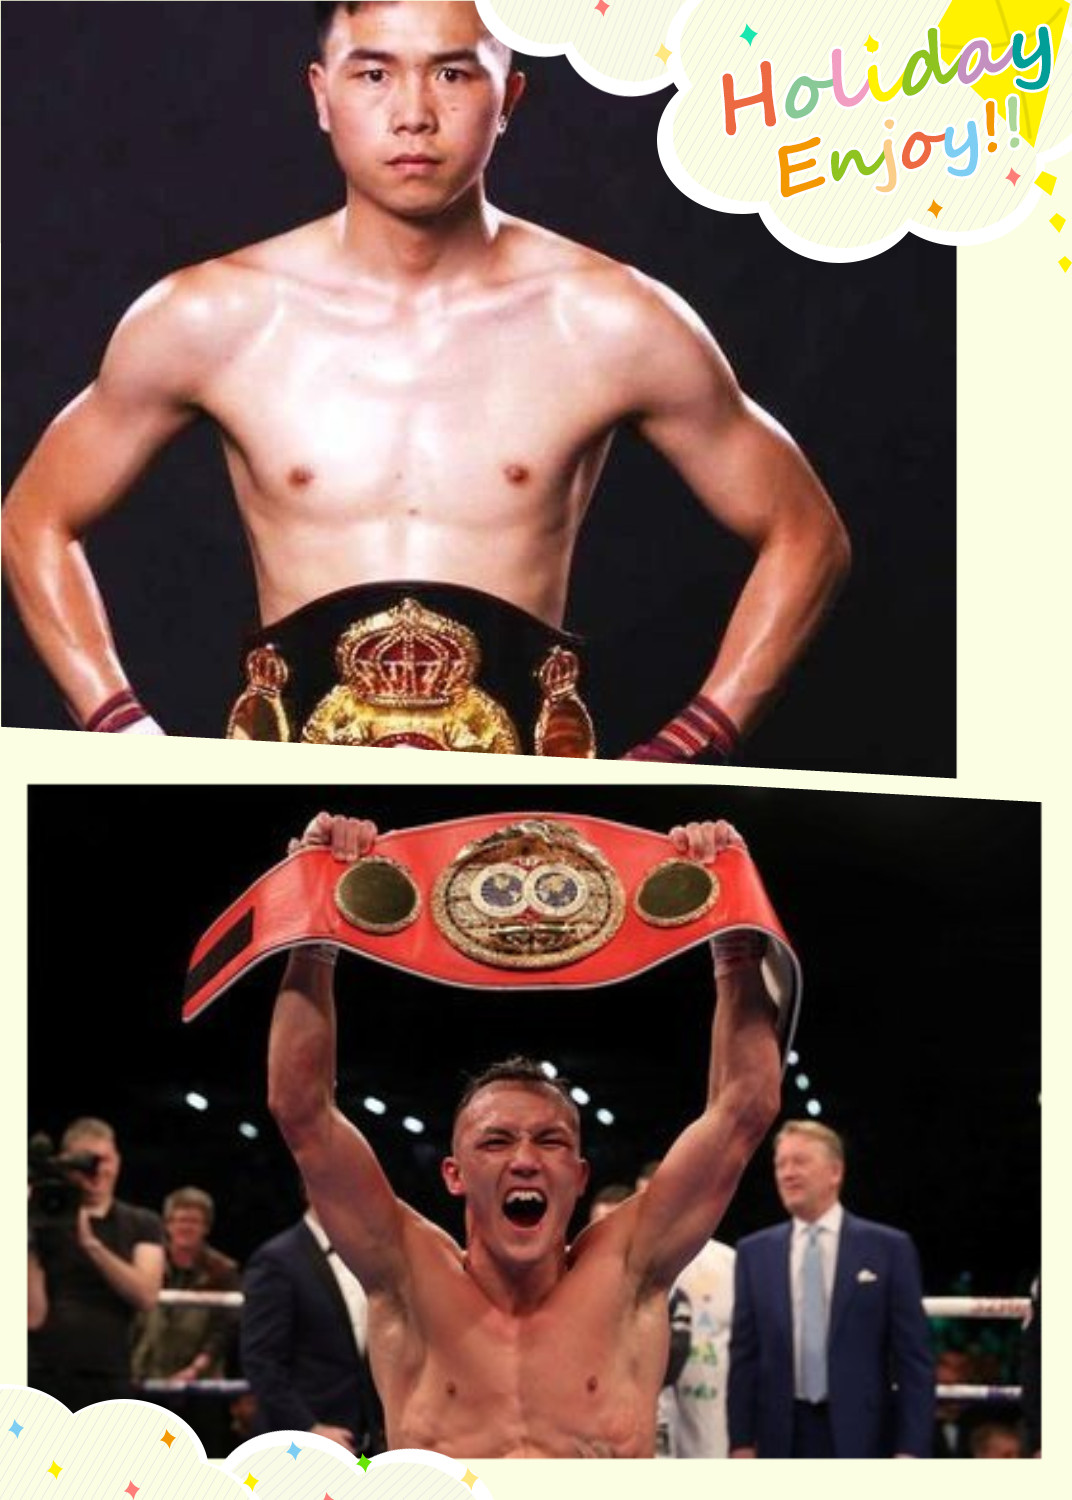 事实上，周比利是拳击运动员出身的，过去参加过很多比赛，还获得过世界轻中量级自由搏击冠军。因此，不少人称他为“世界拳王”。